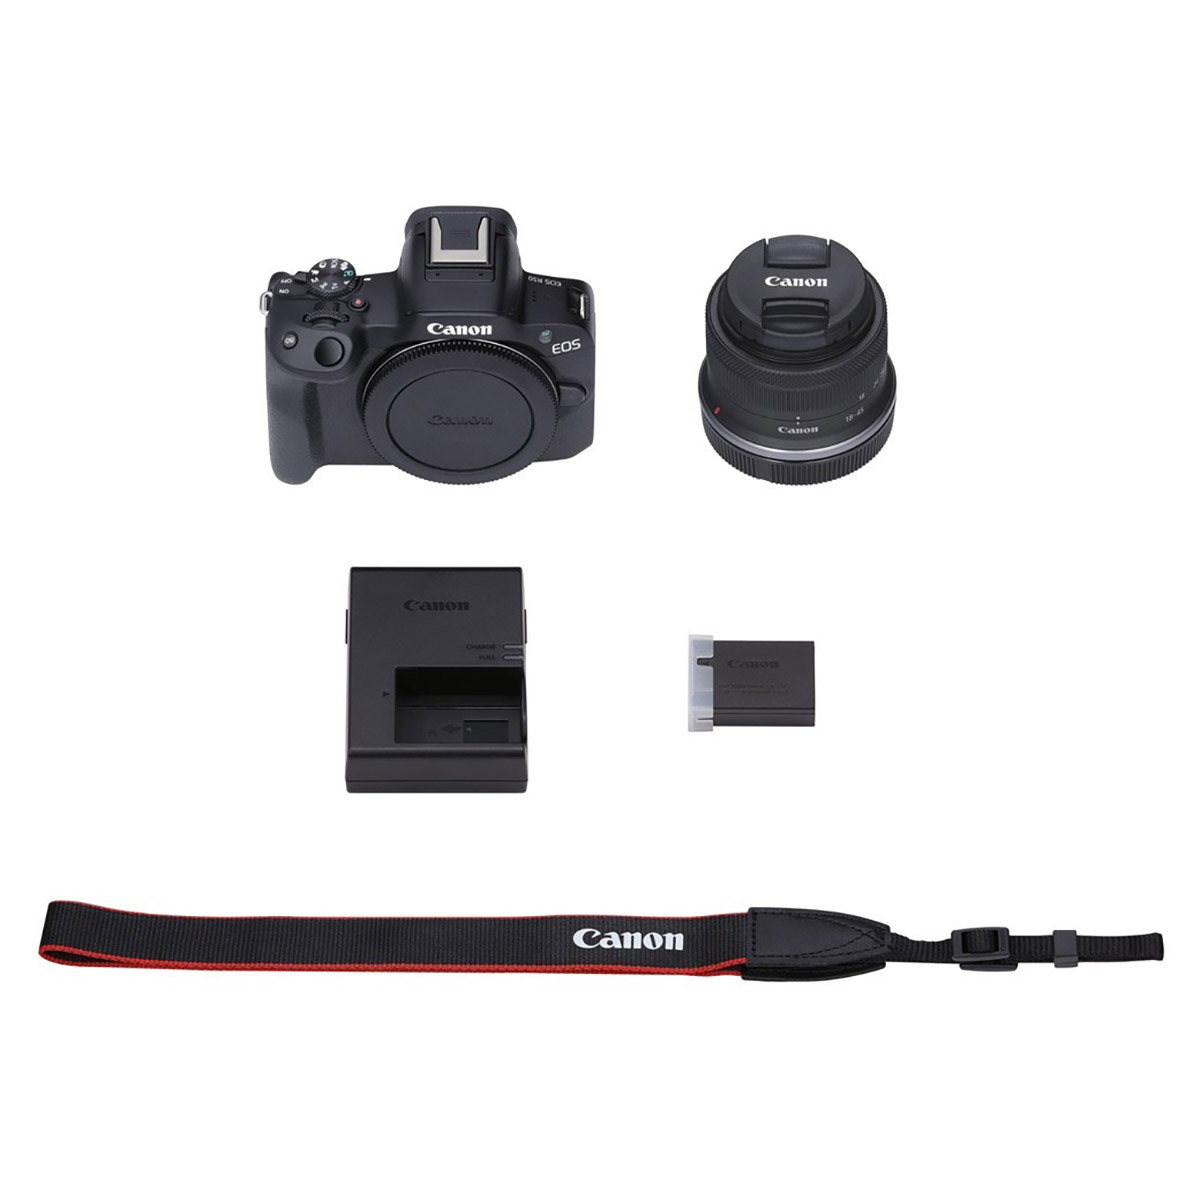 캐논 EOS R50 미러리스 카메라 ( 본체 + 18-45mm 렌즈 ) - 블랙